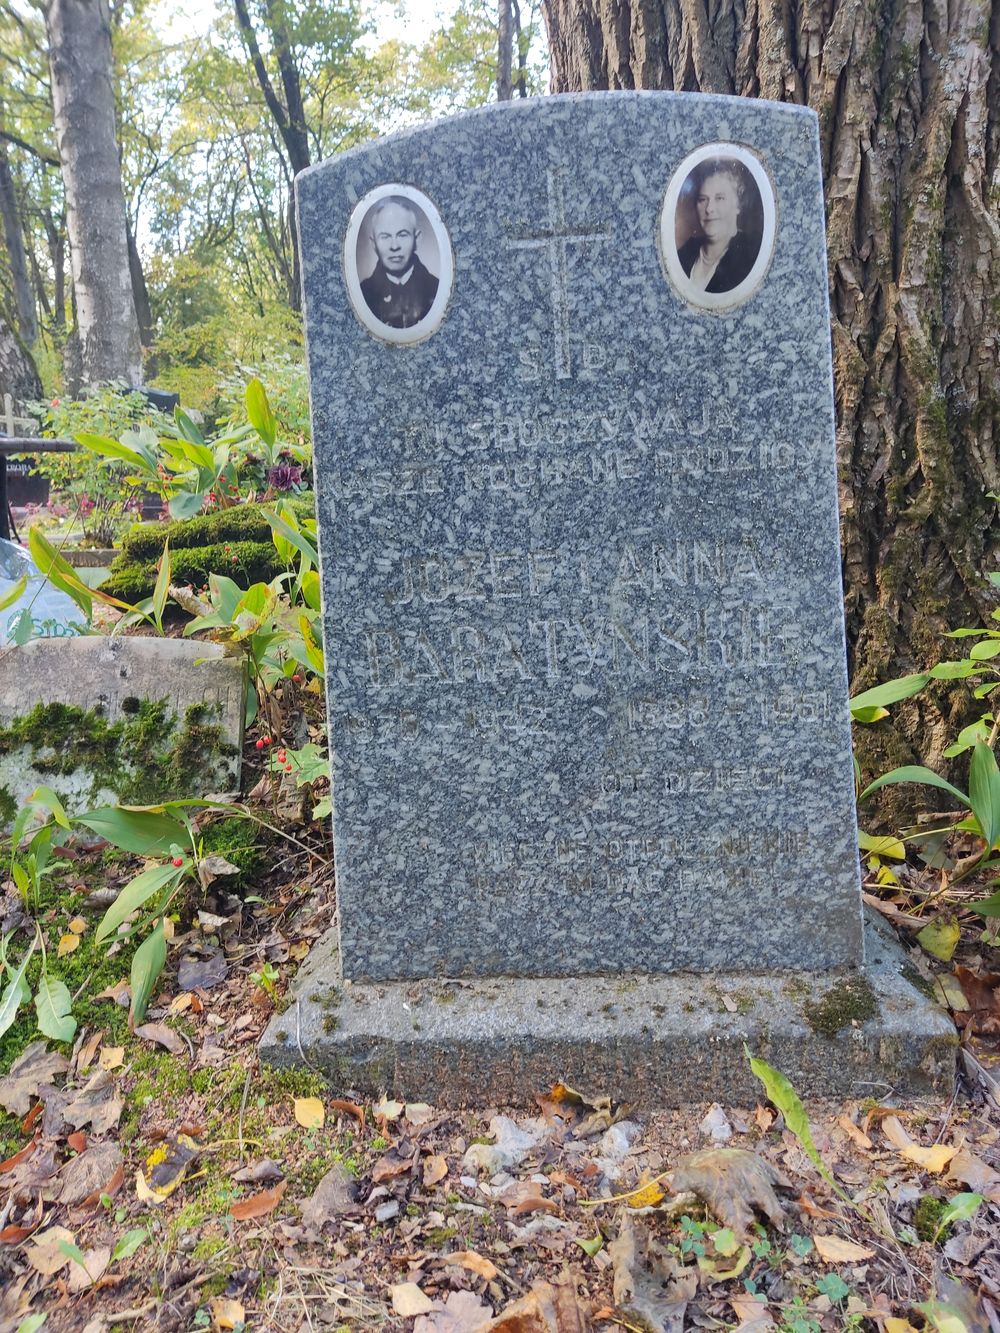 Tombstone of Joseph and Anna Abaratynski